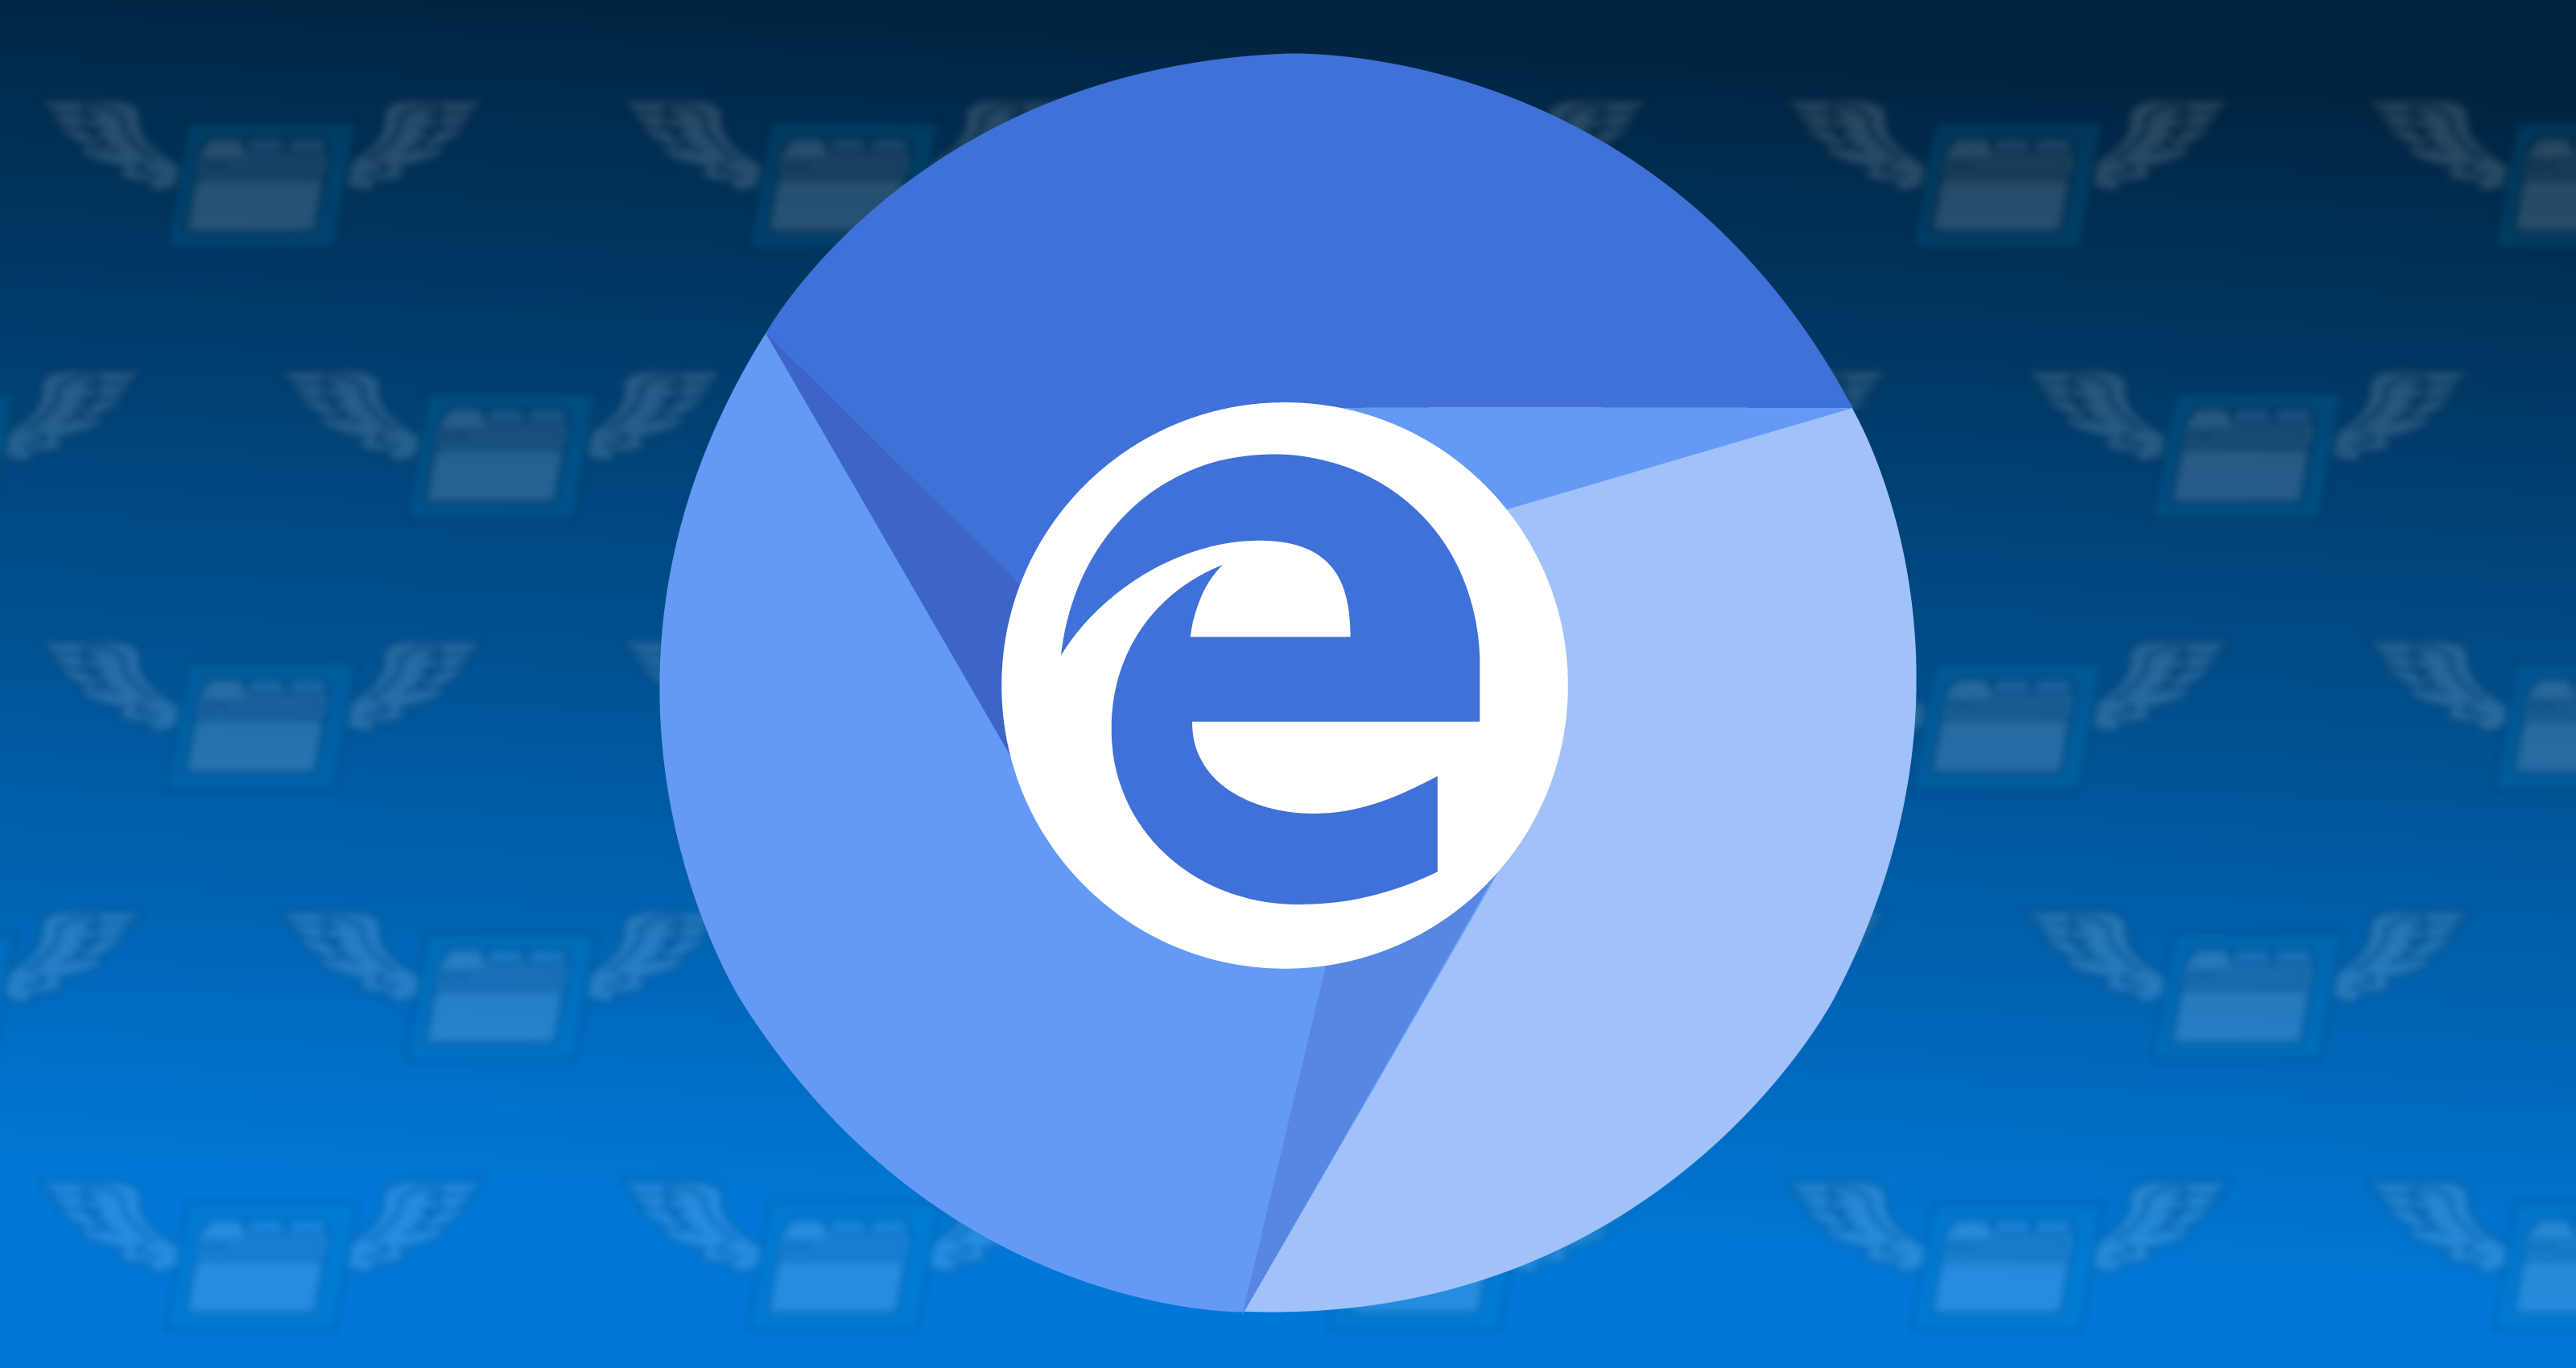 Microsoft Edge Canary bo dobil Microsoftov prevajalec: Chromium Edition Microsoftu omogoča, da vsak dan izboljša brskalnik